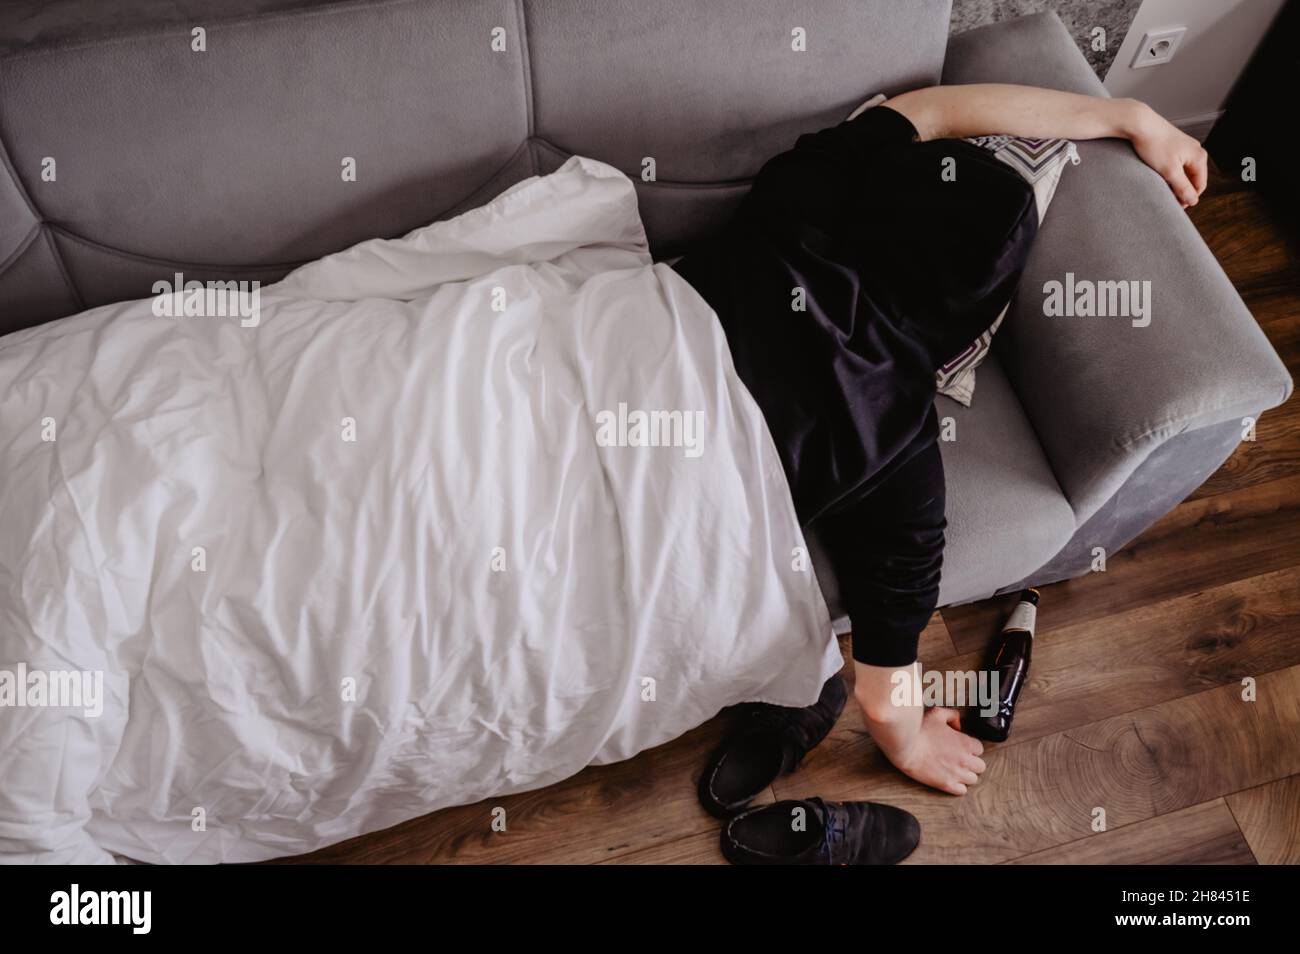 Mann, der mit Kopfschmerzen oder einem Kater auf einer Couch liegt, mit einer Flasche Bier und einer weißen Decke Stockfoto